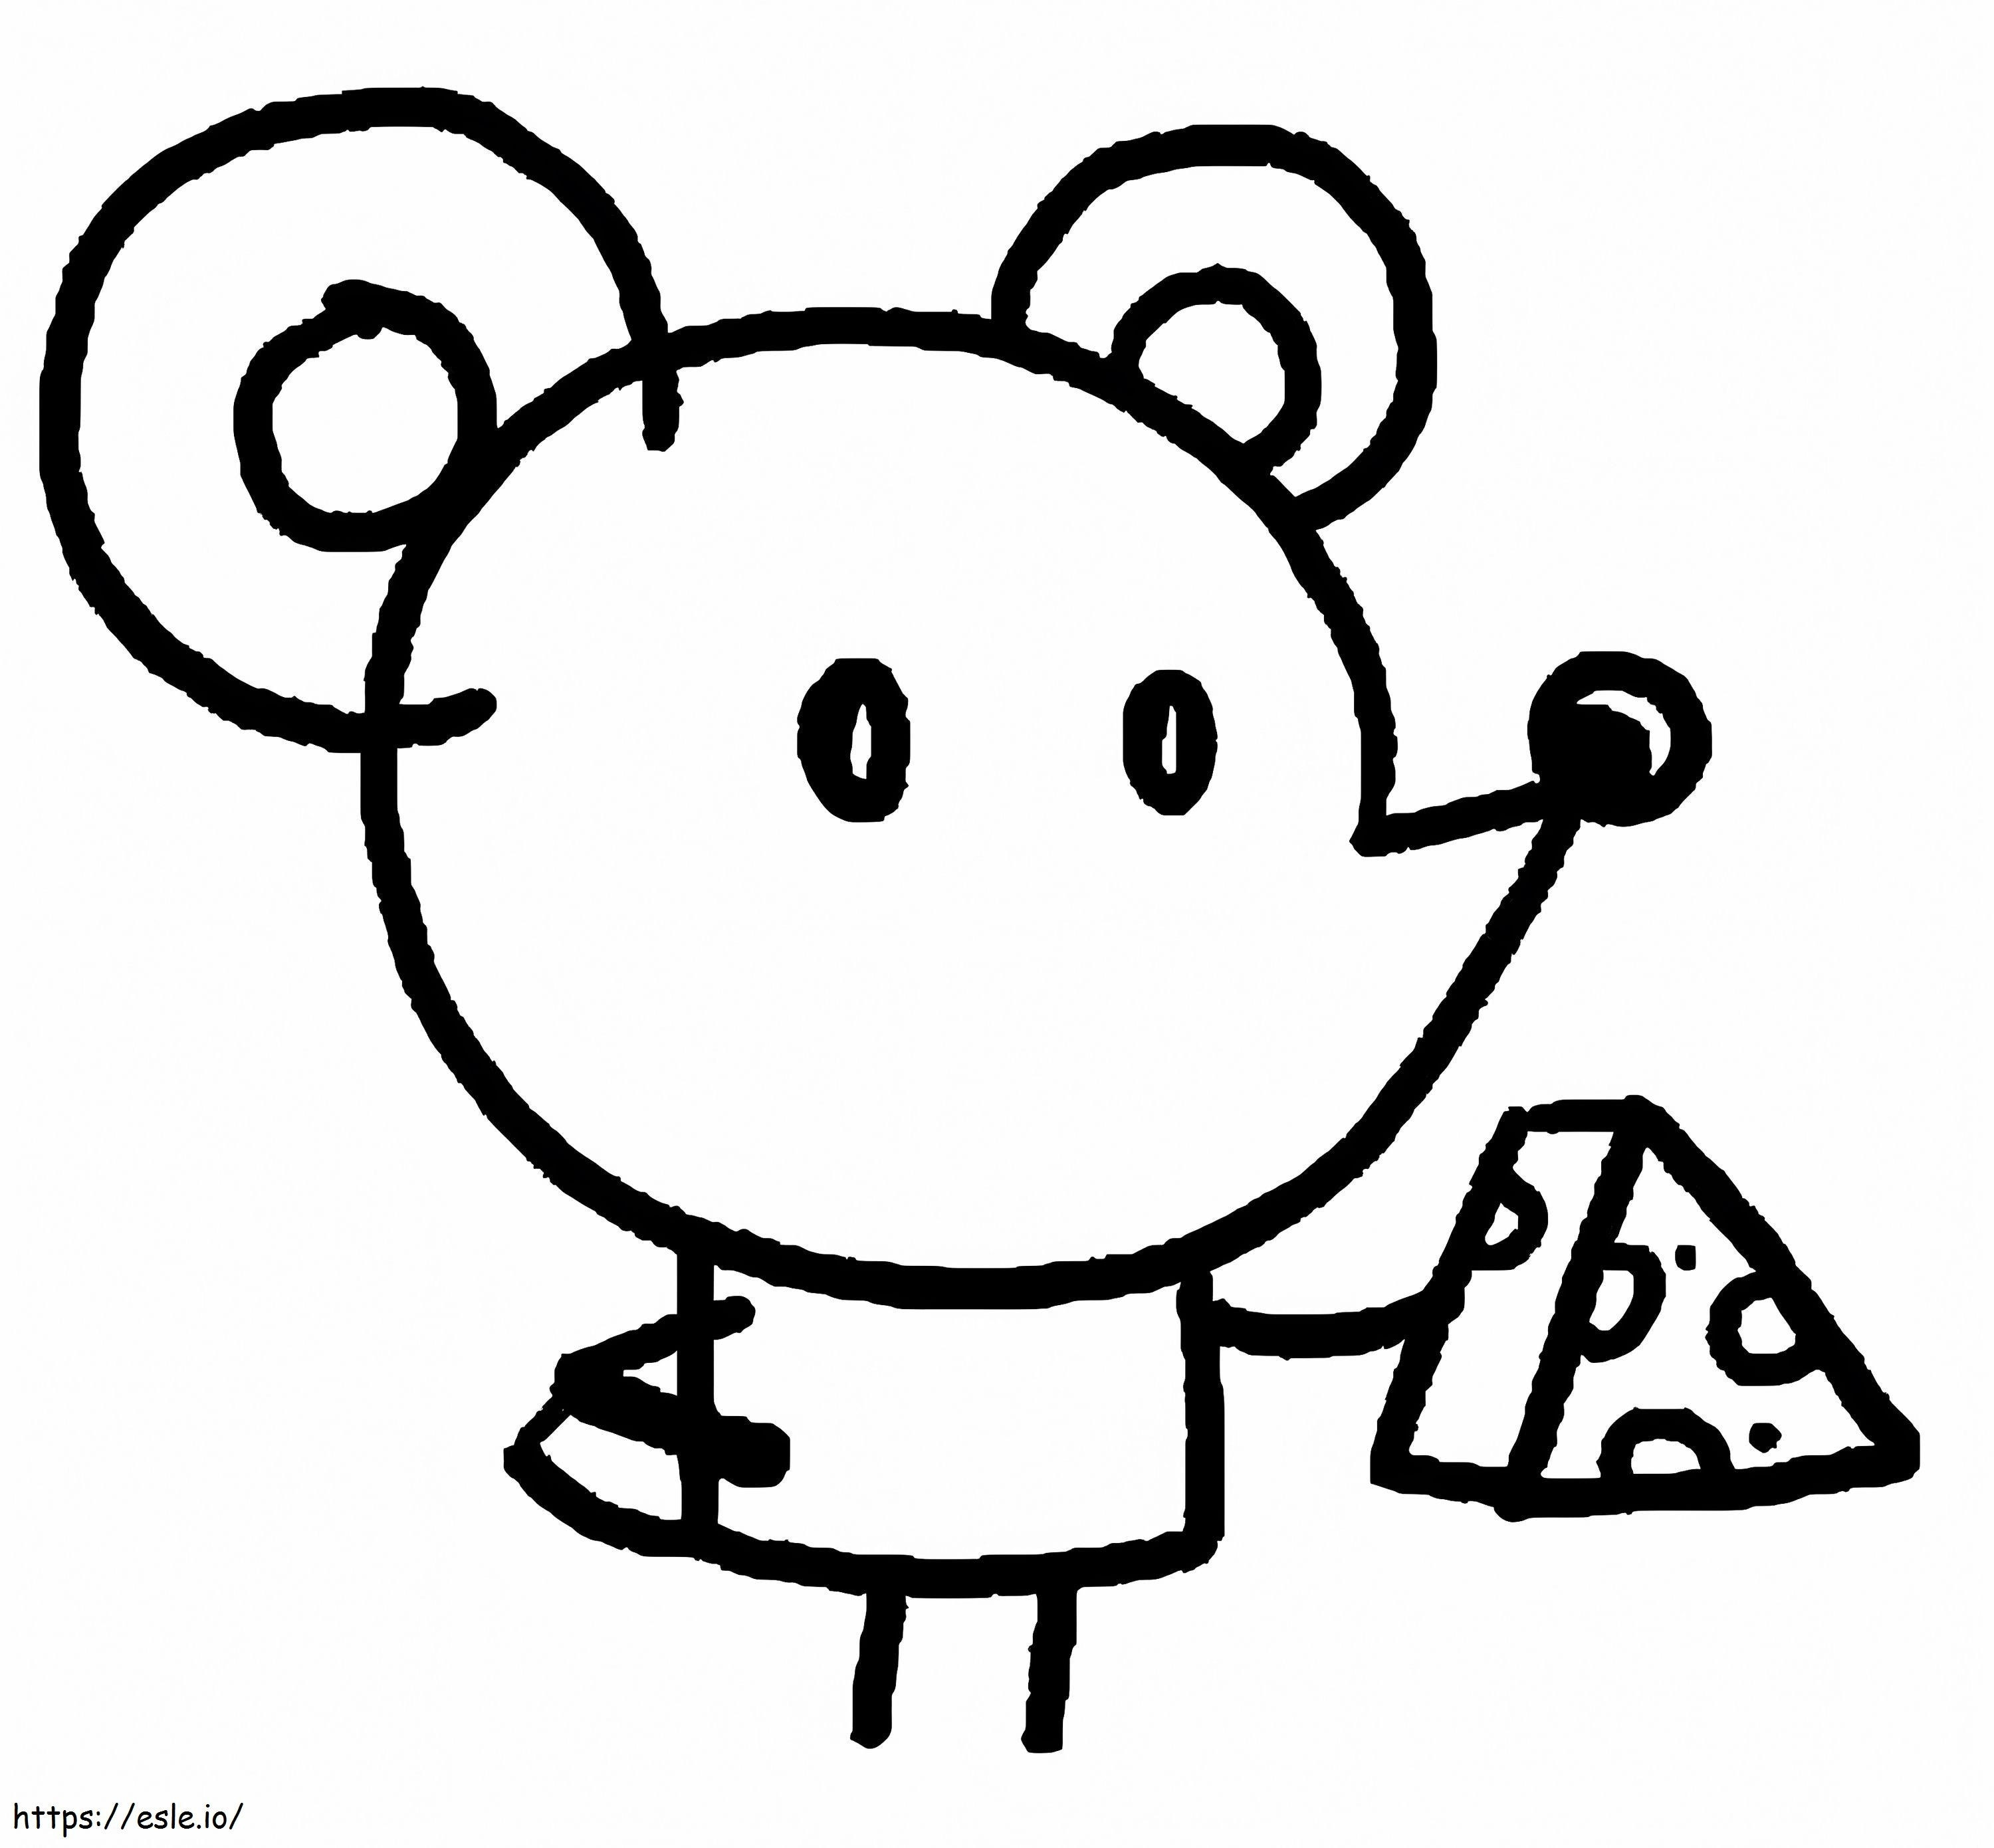 Pieni hiiri Chico Bon Bonilta värityskuva